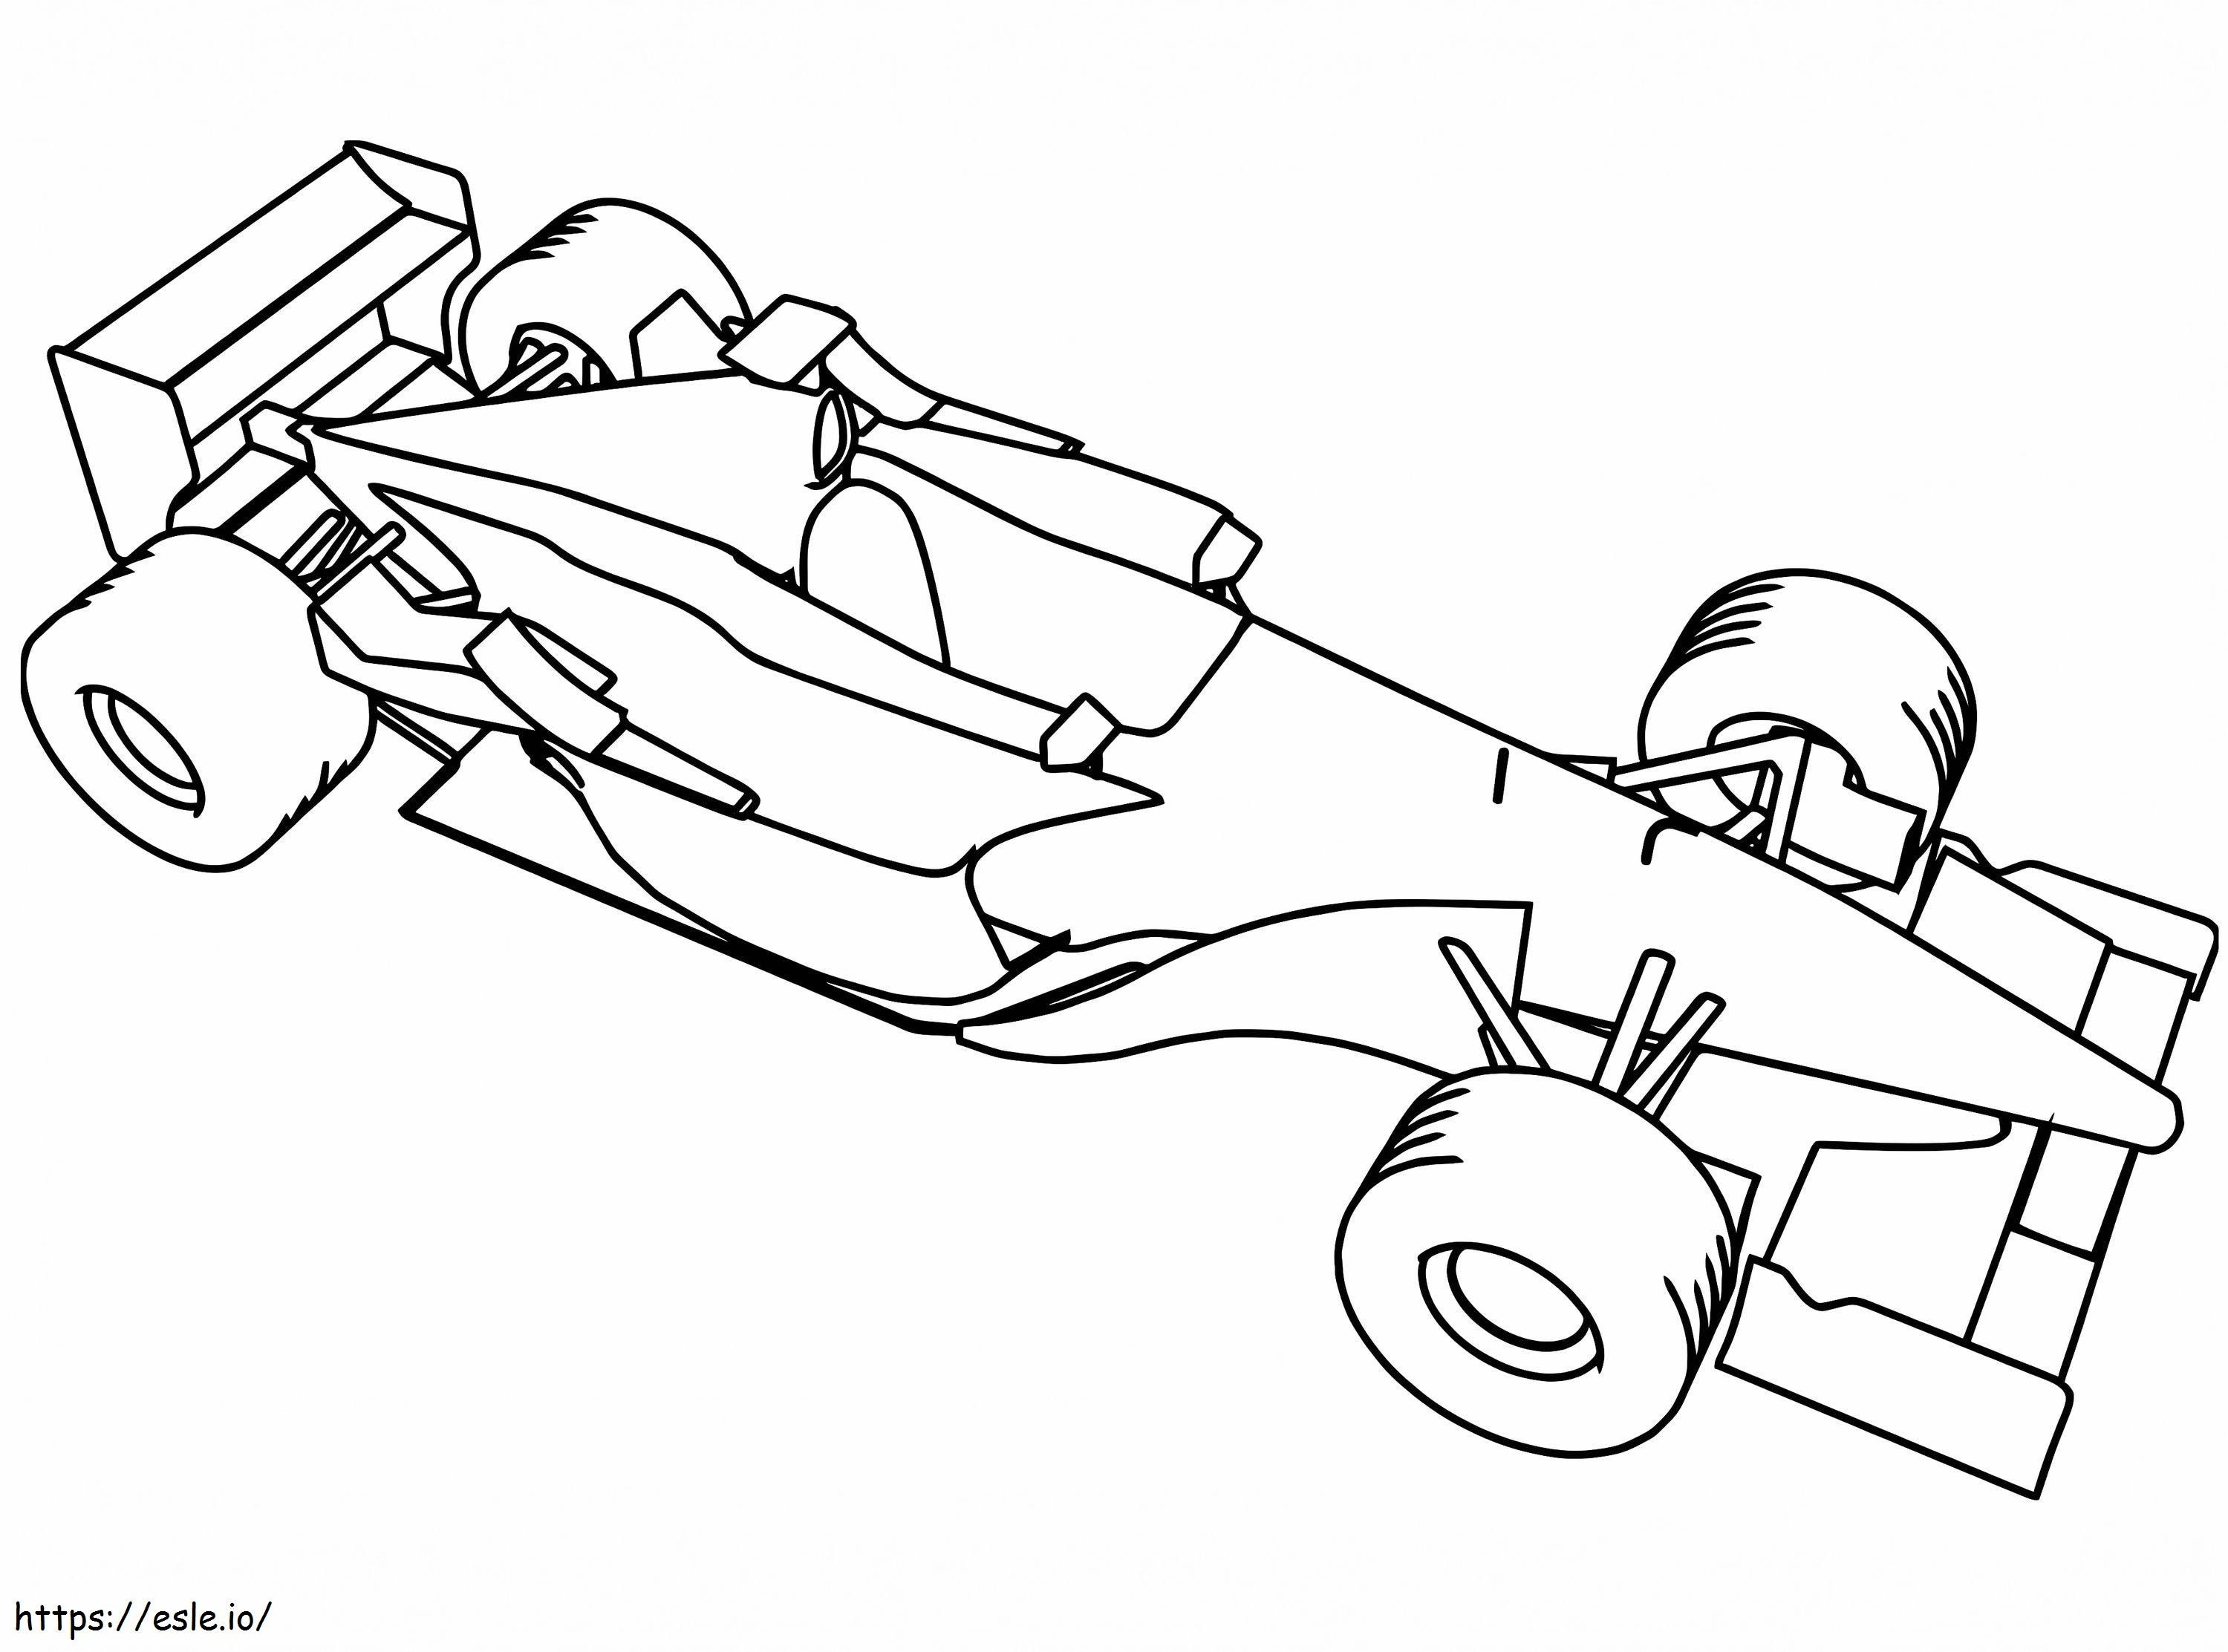 Formula 1 Racing Car coloring page